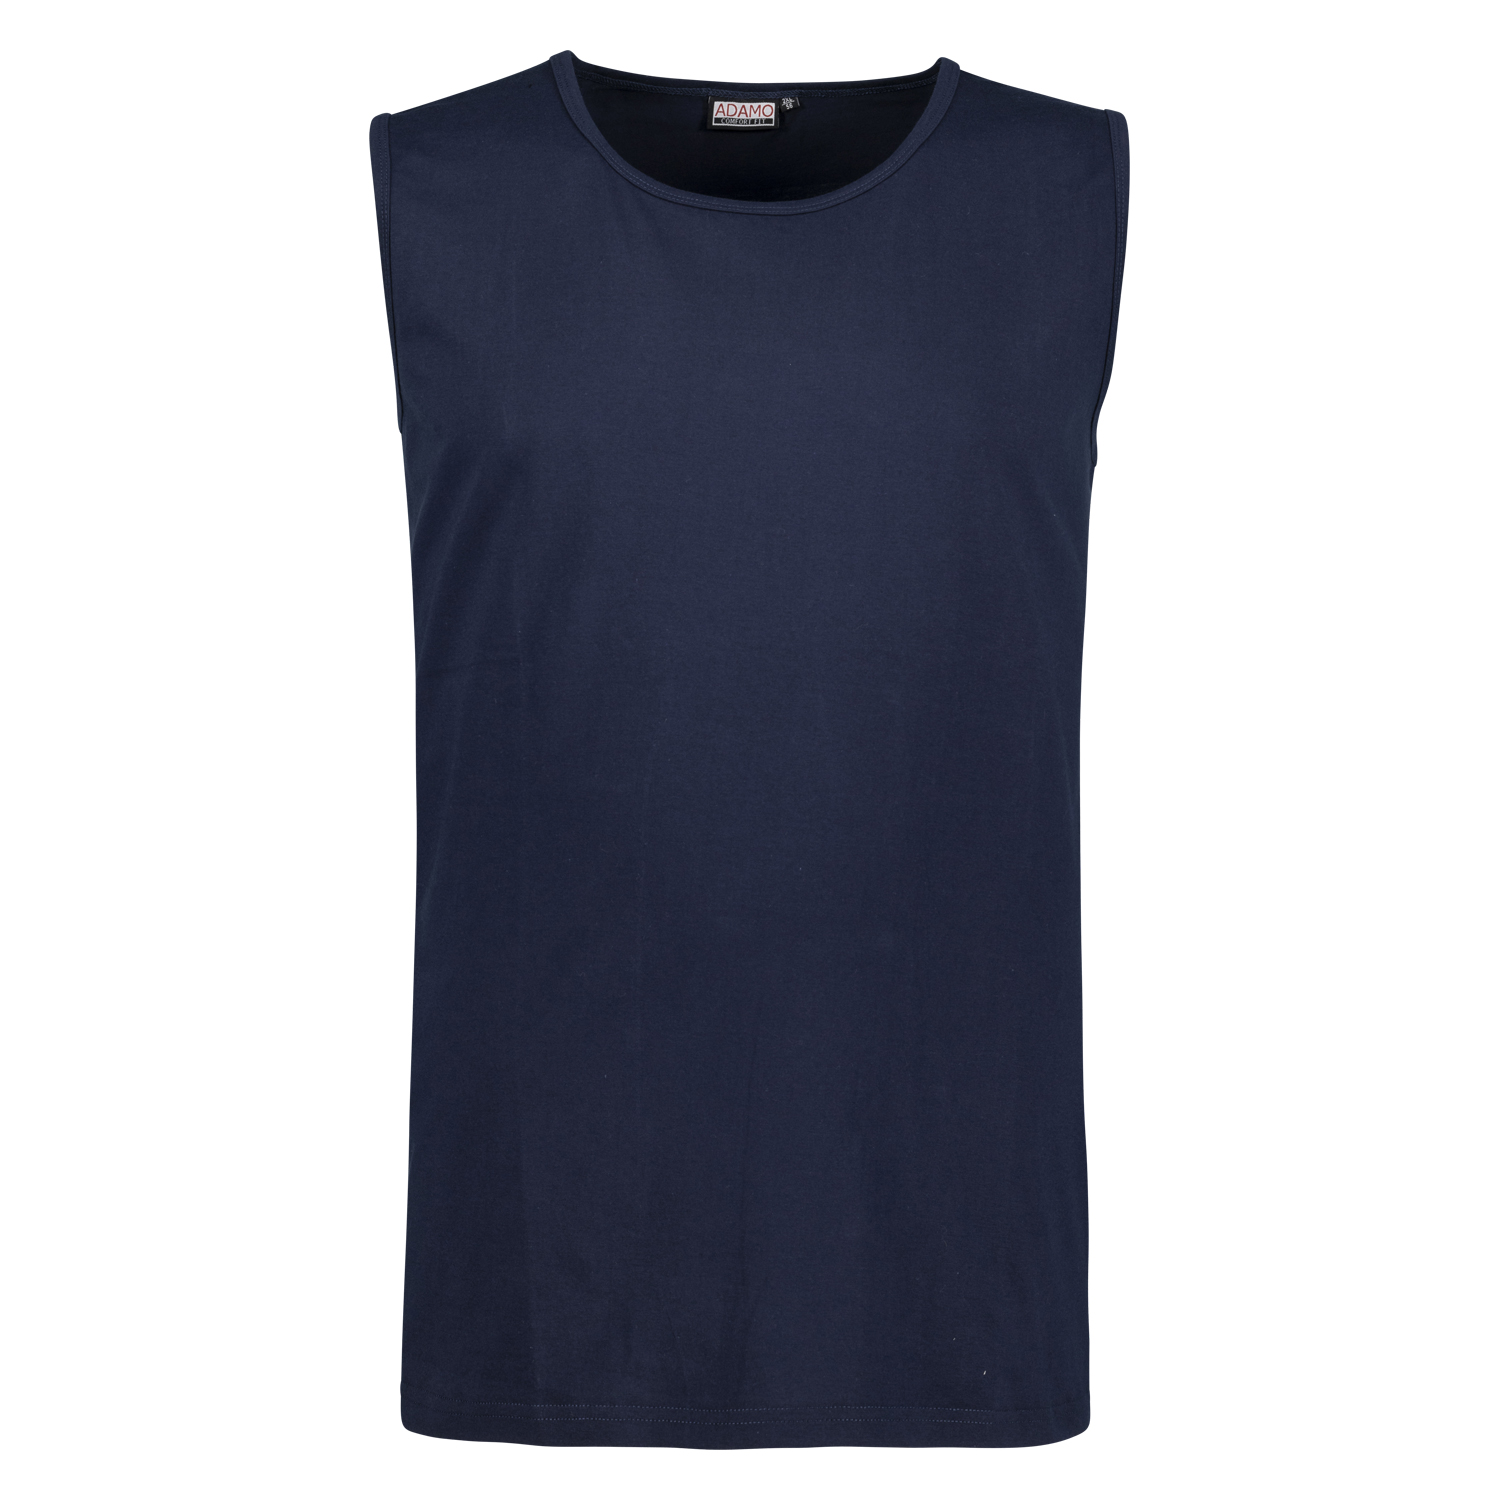 Dark blue muscle shirt ROD COMFORT FIT by ADAMO till oversize 12XL